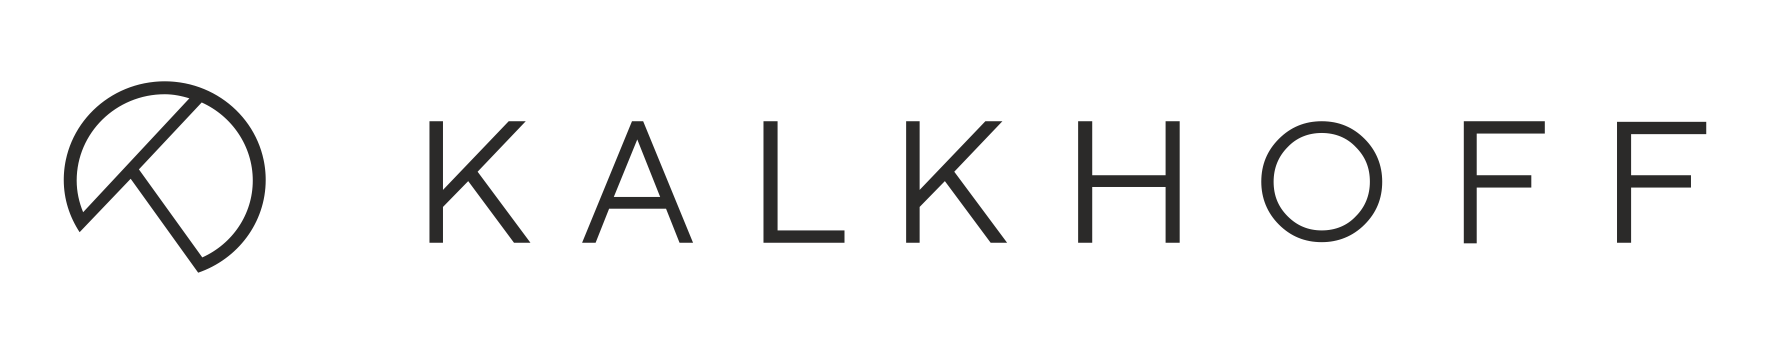 logo kalkhoff